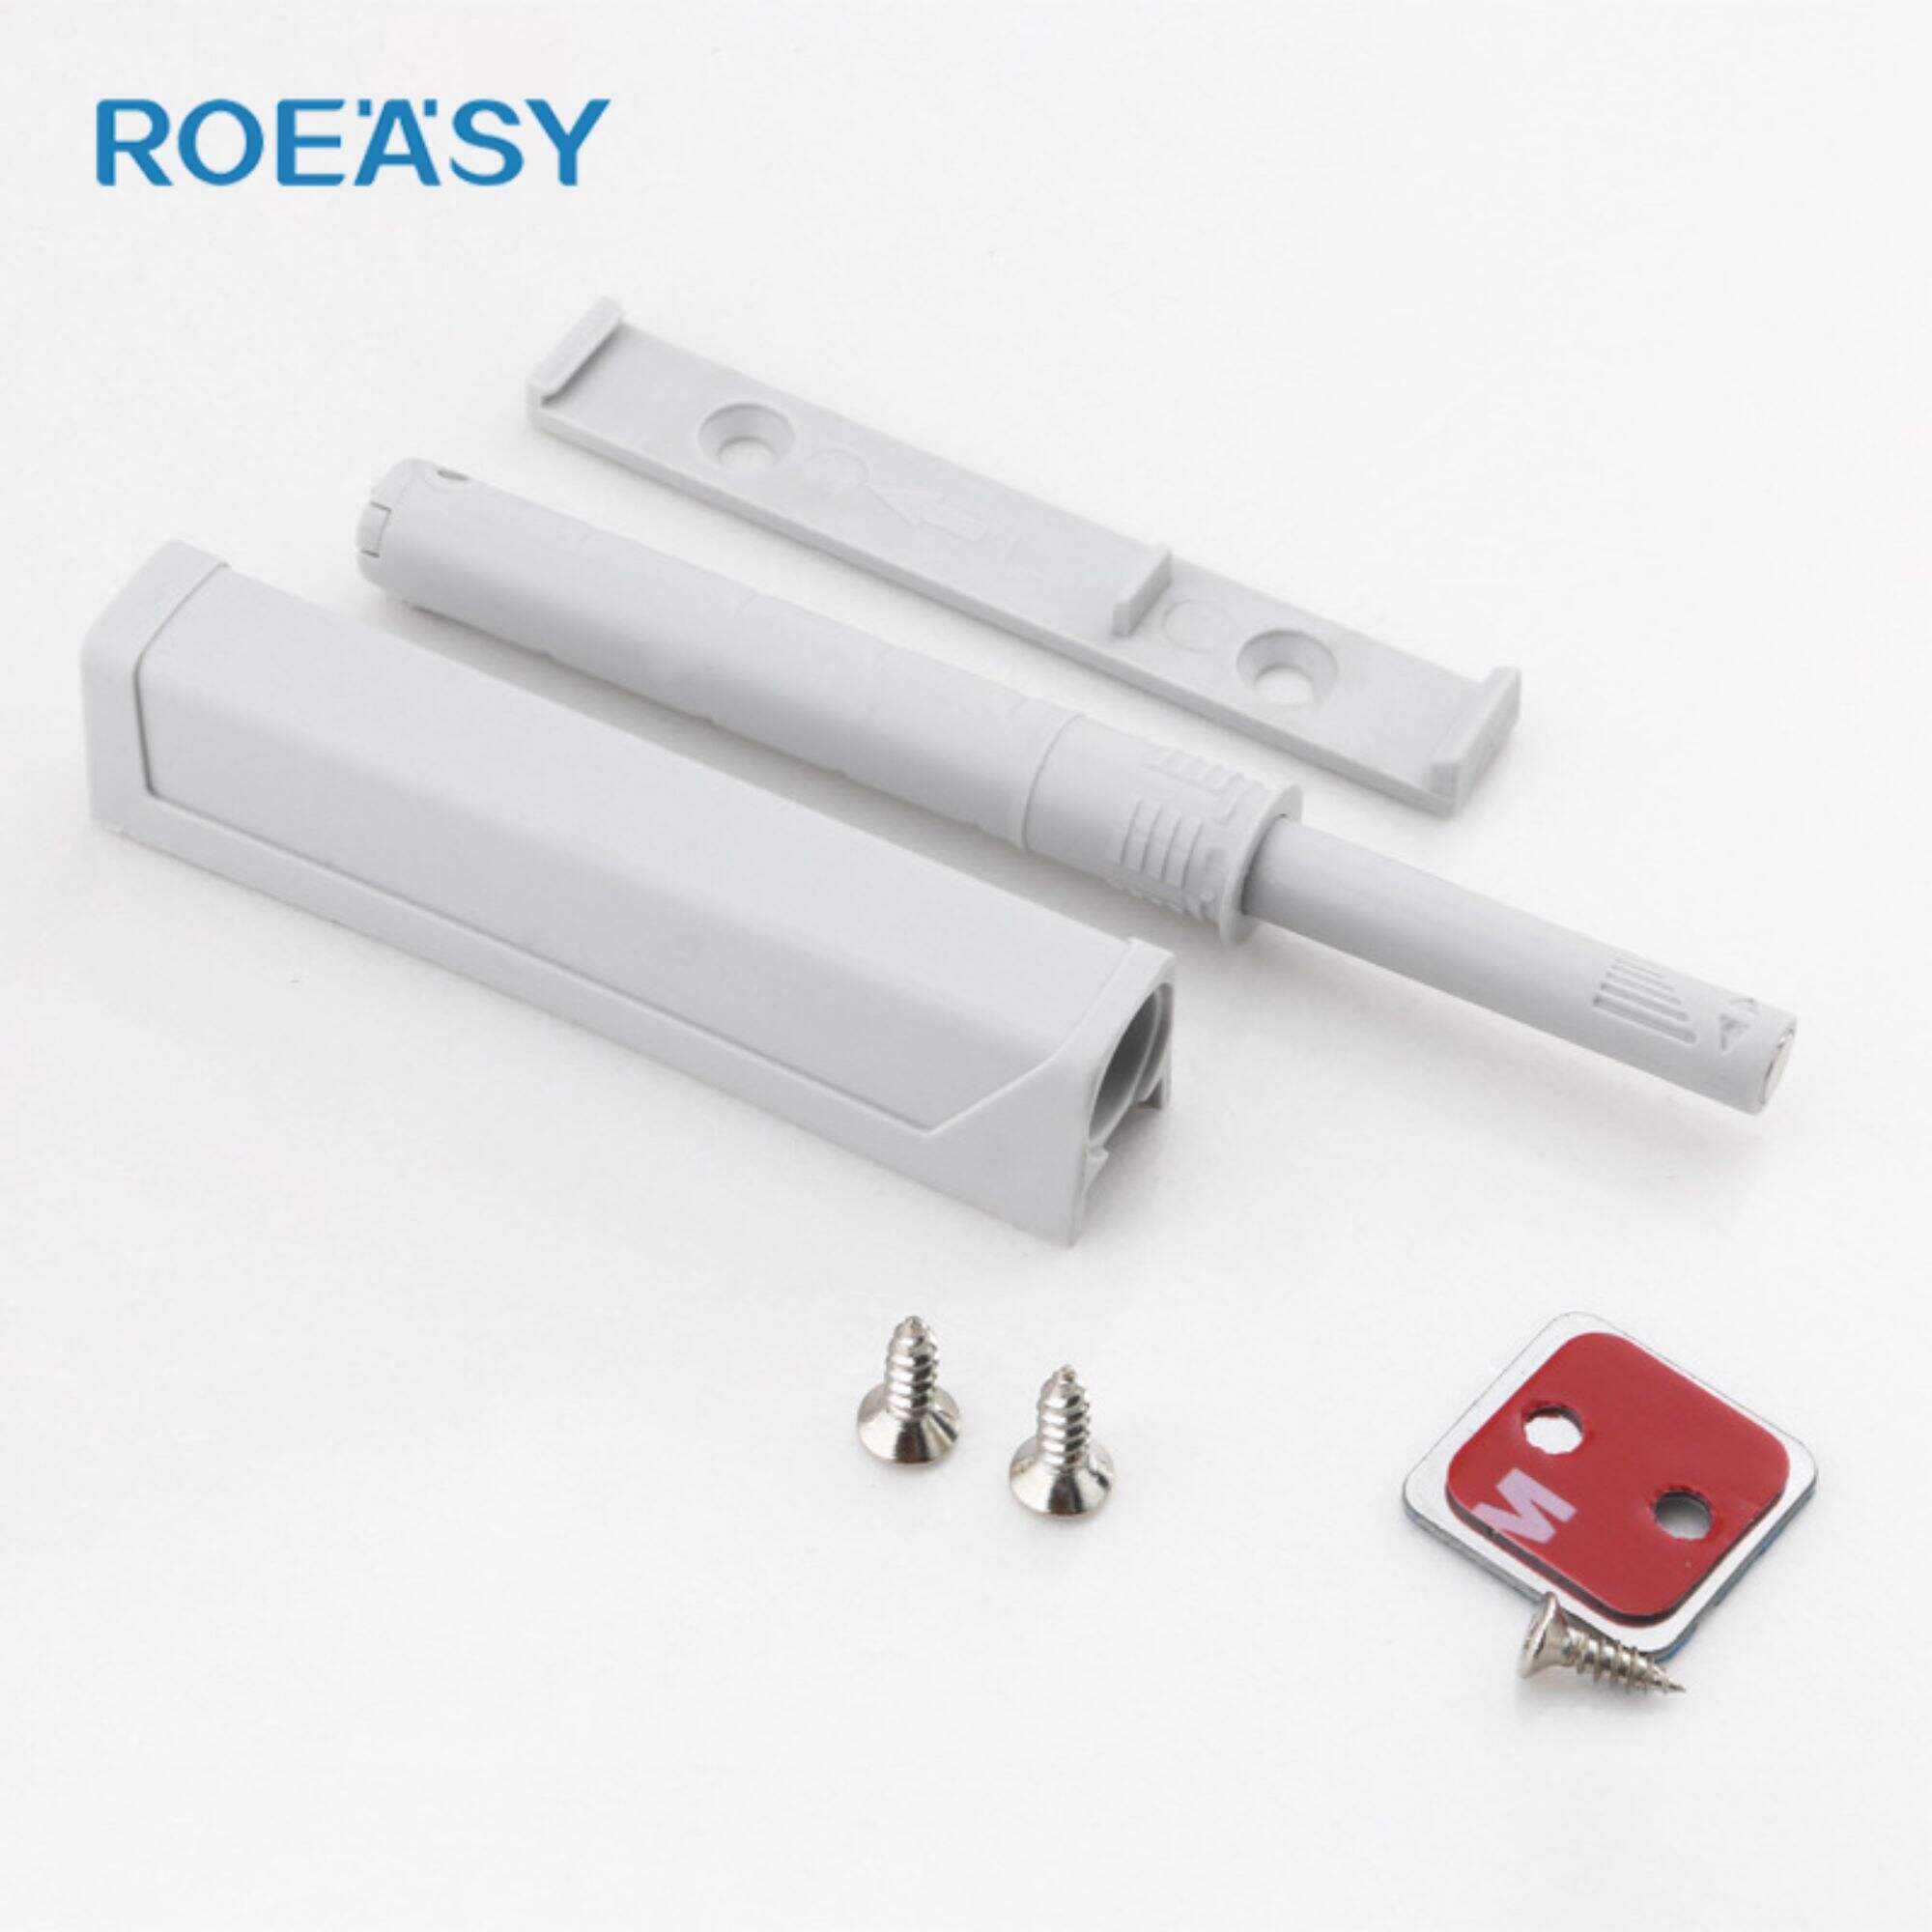 Roeasy RT021A Coletor magnético empurra para abrir travas de porta de gabinete